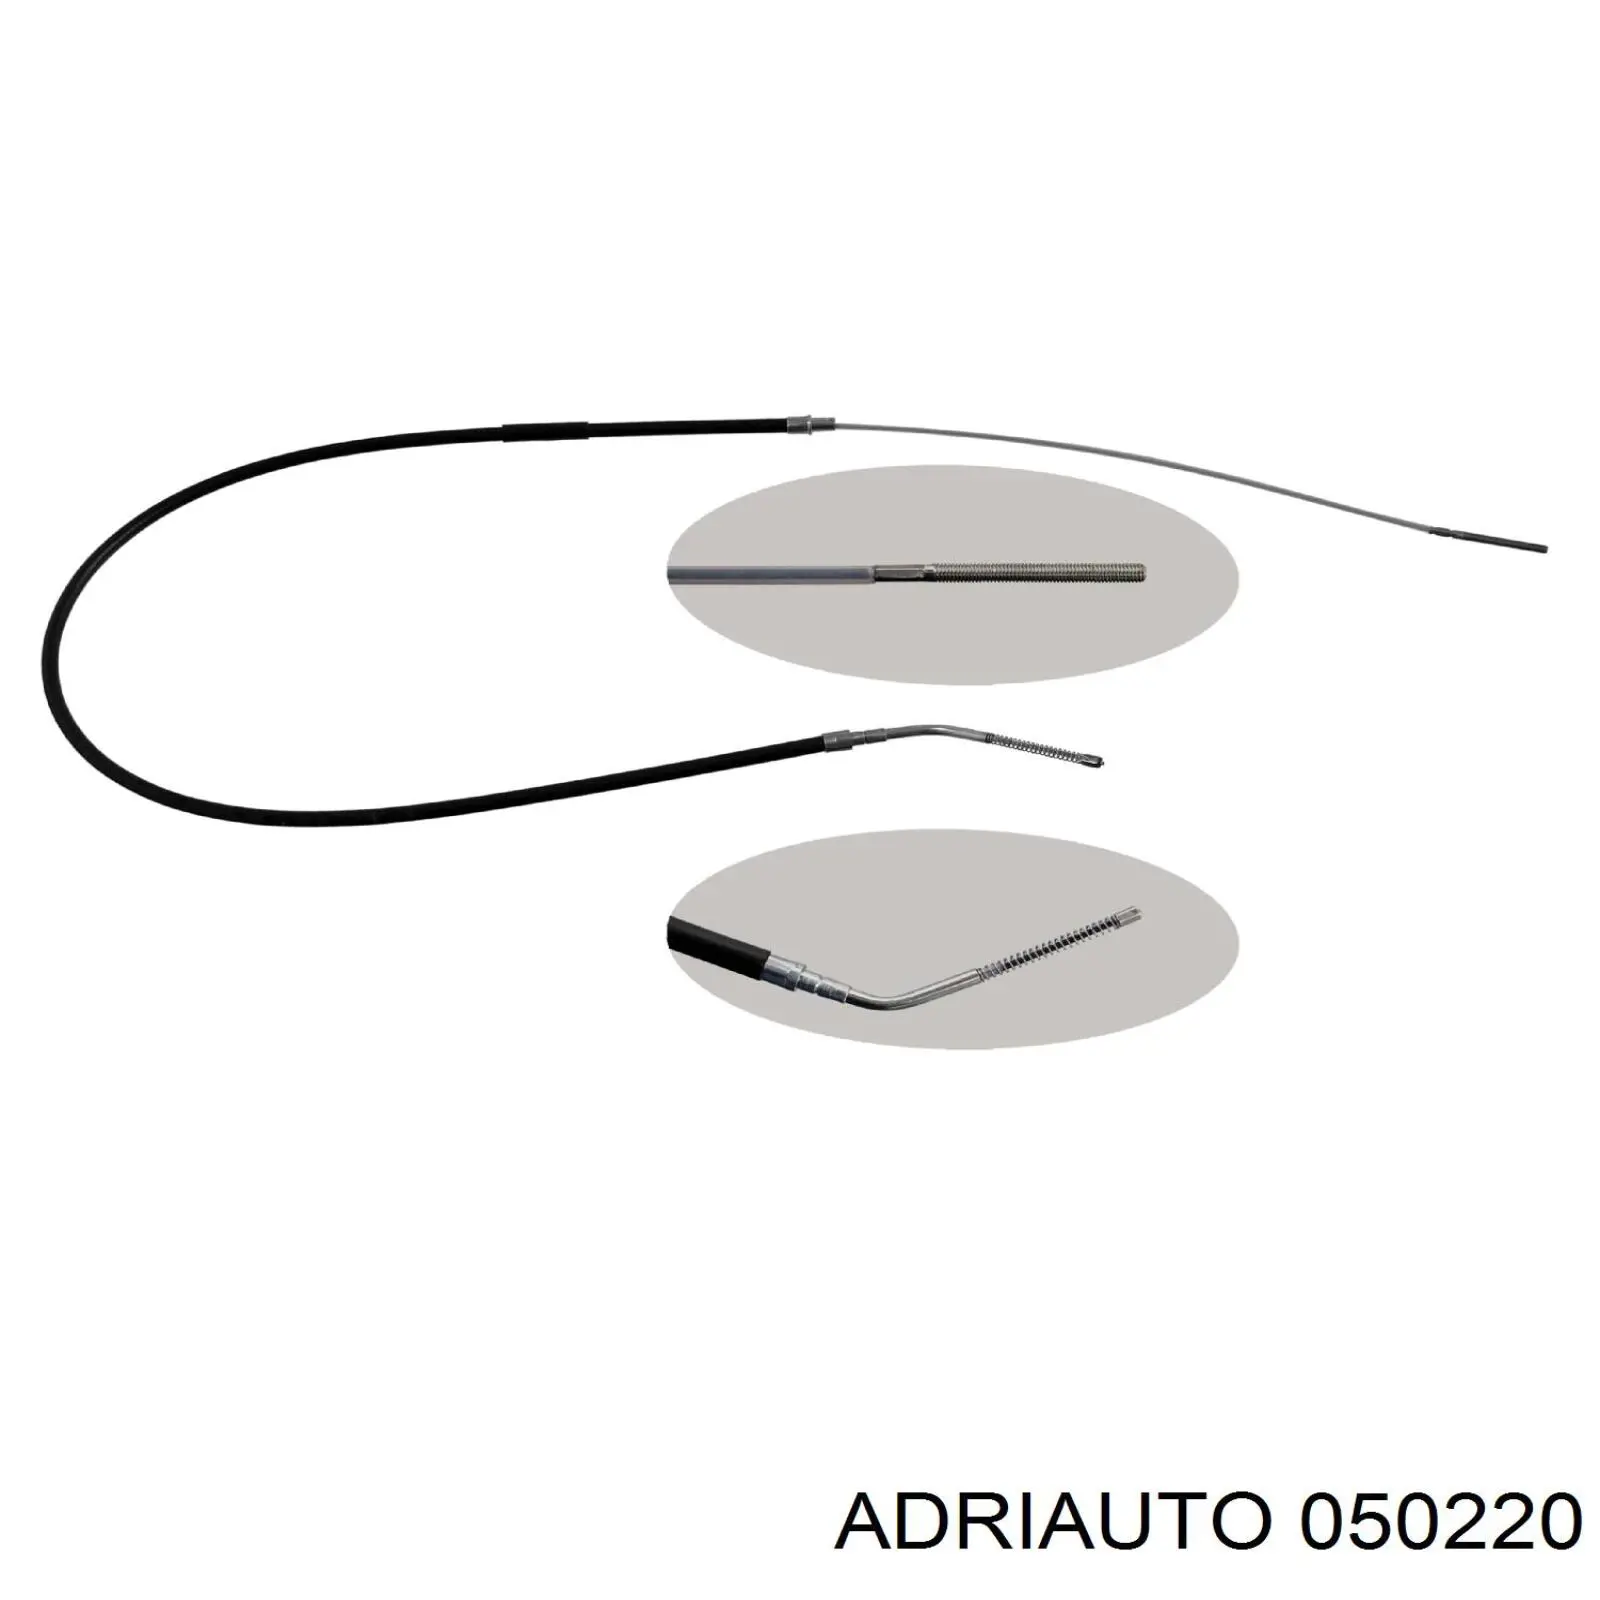 05.0220 Adriauto cable de freno de mano trasero derecho/izquierdo